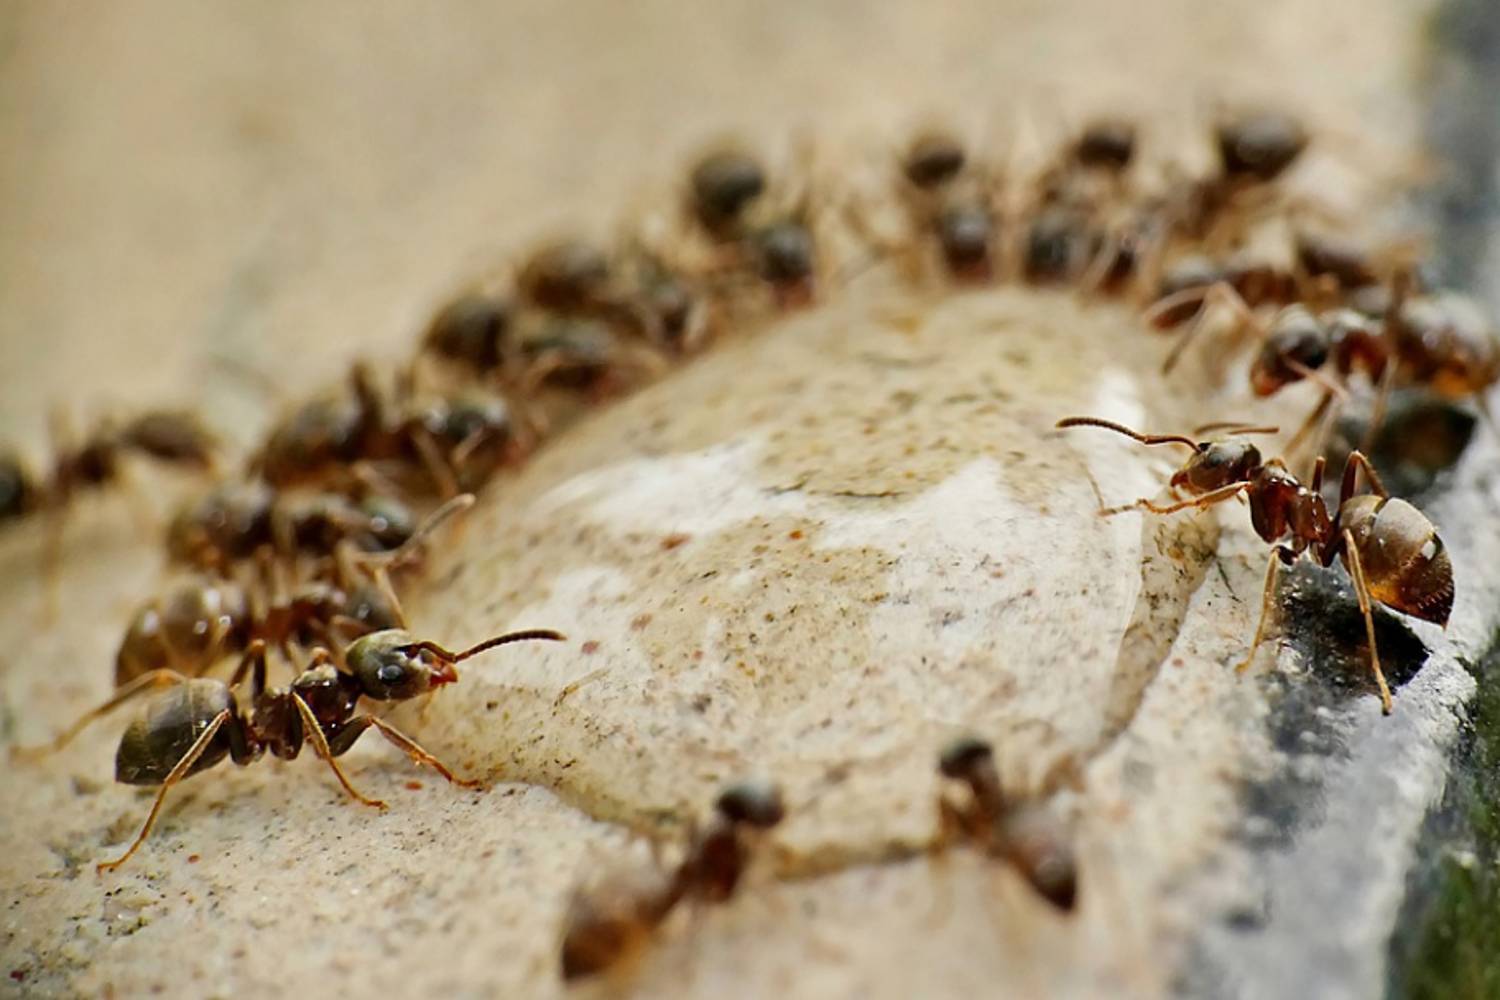 Ants around moisture